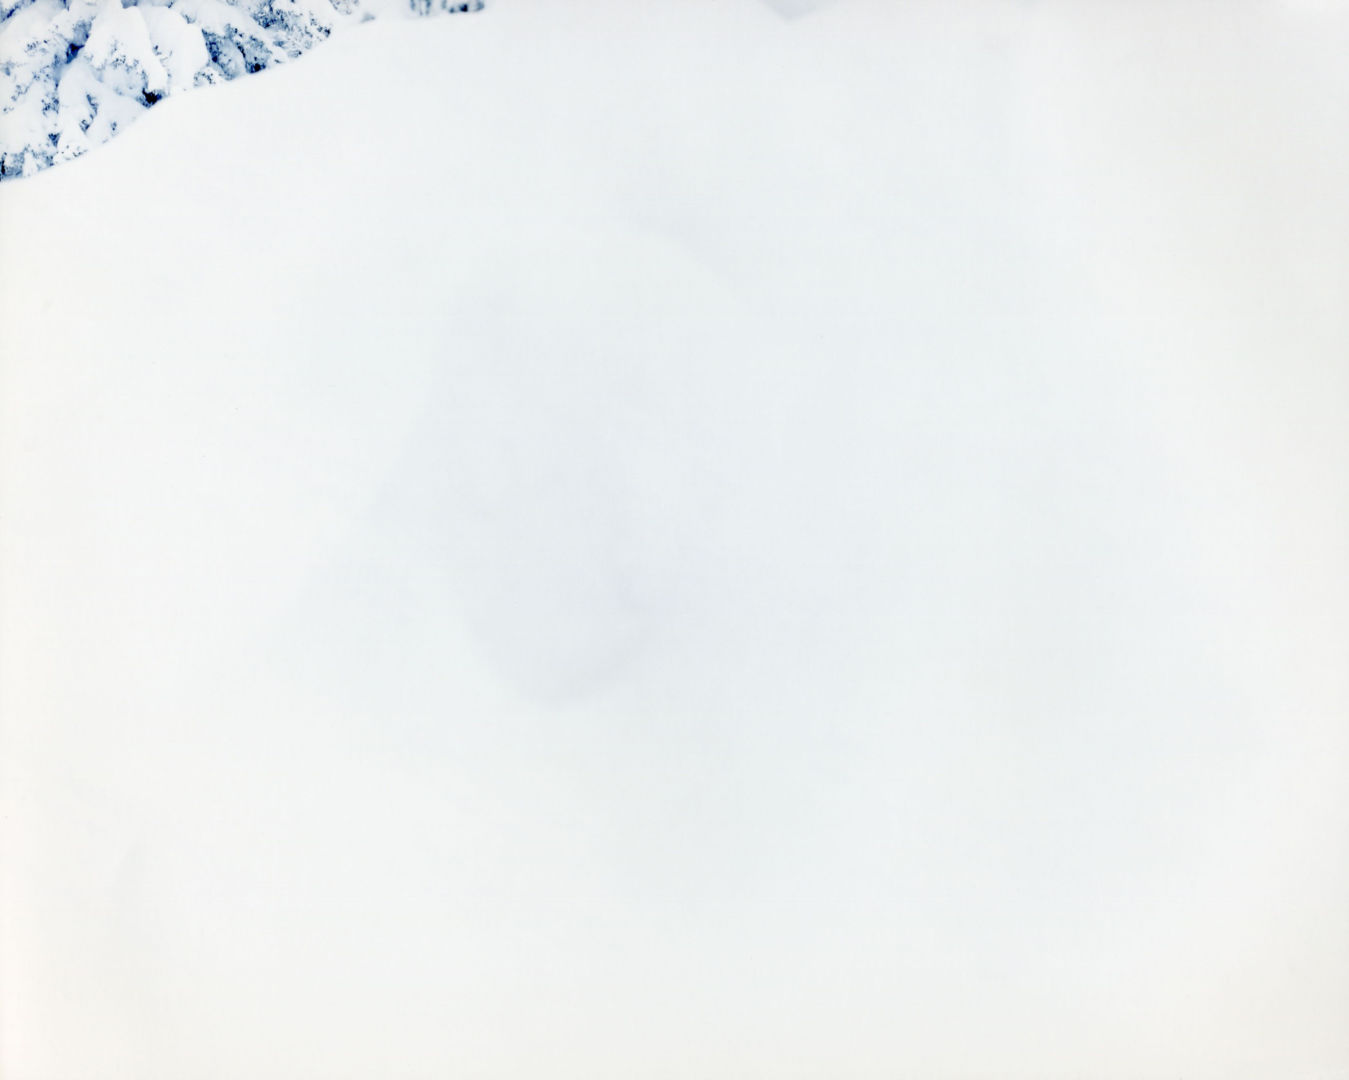 Risaku SUZUKI (*1963, Japan): WHITE 09,H-363 – Christophe Guye Galerie